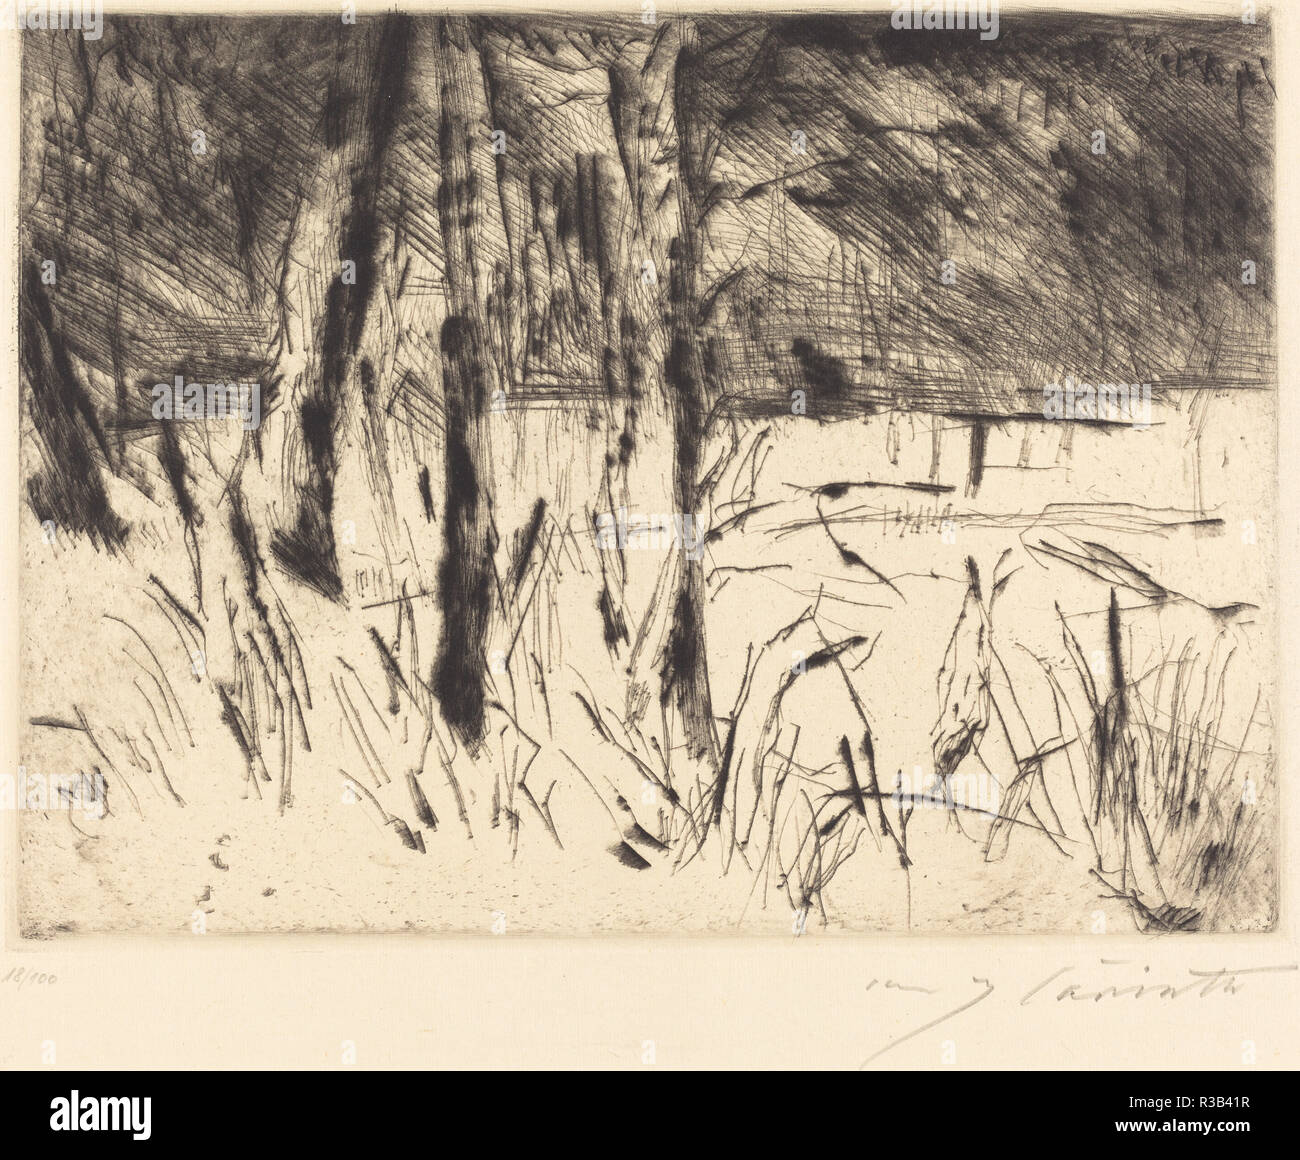 Il giardino zoologico (Tiergarten). Data: 1922. Dimensioni: piastra: 22,2 x 30,1 cm (8 3/4 x 11 7/8 in.) foglio: 38,7 x 48 cm (15 1/4 x 18 7/8 in.). Medium: puntasecca in nero su carta del Giappone. Museo: National Gallery of Art di Washington DC. Autore: Lovis Corinth. Foto Stock